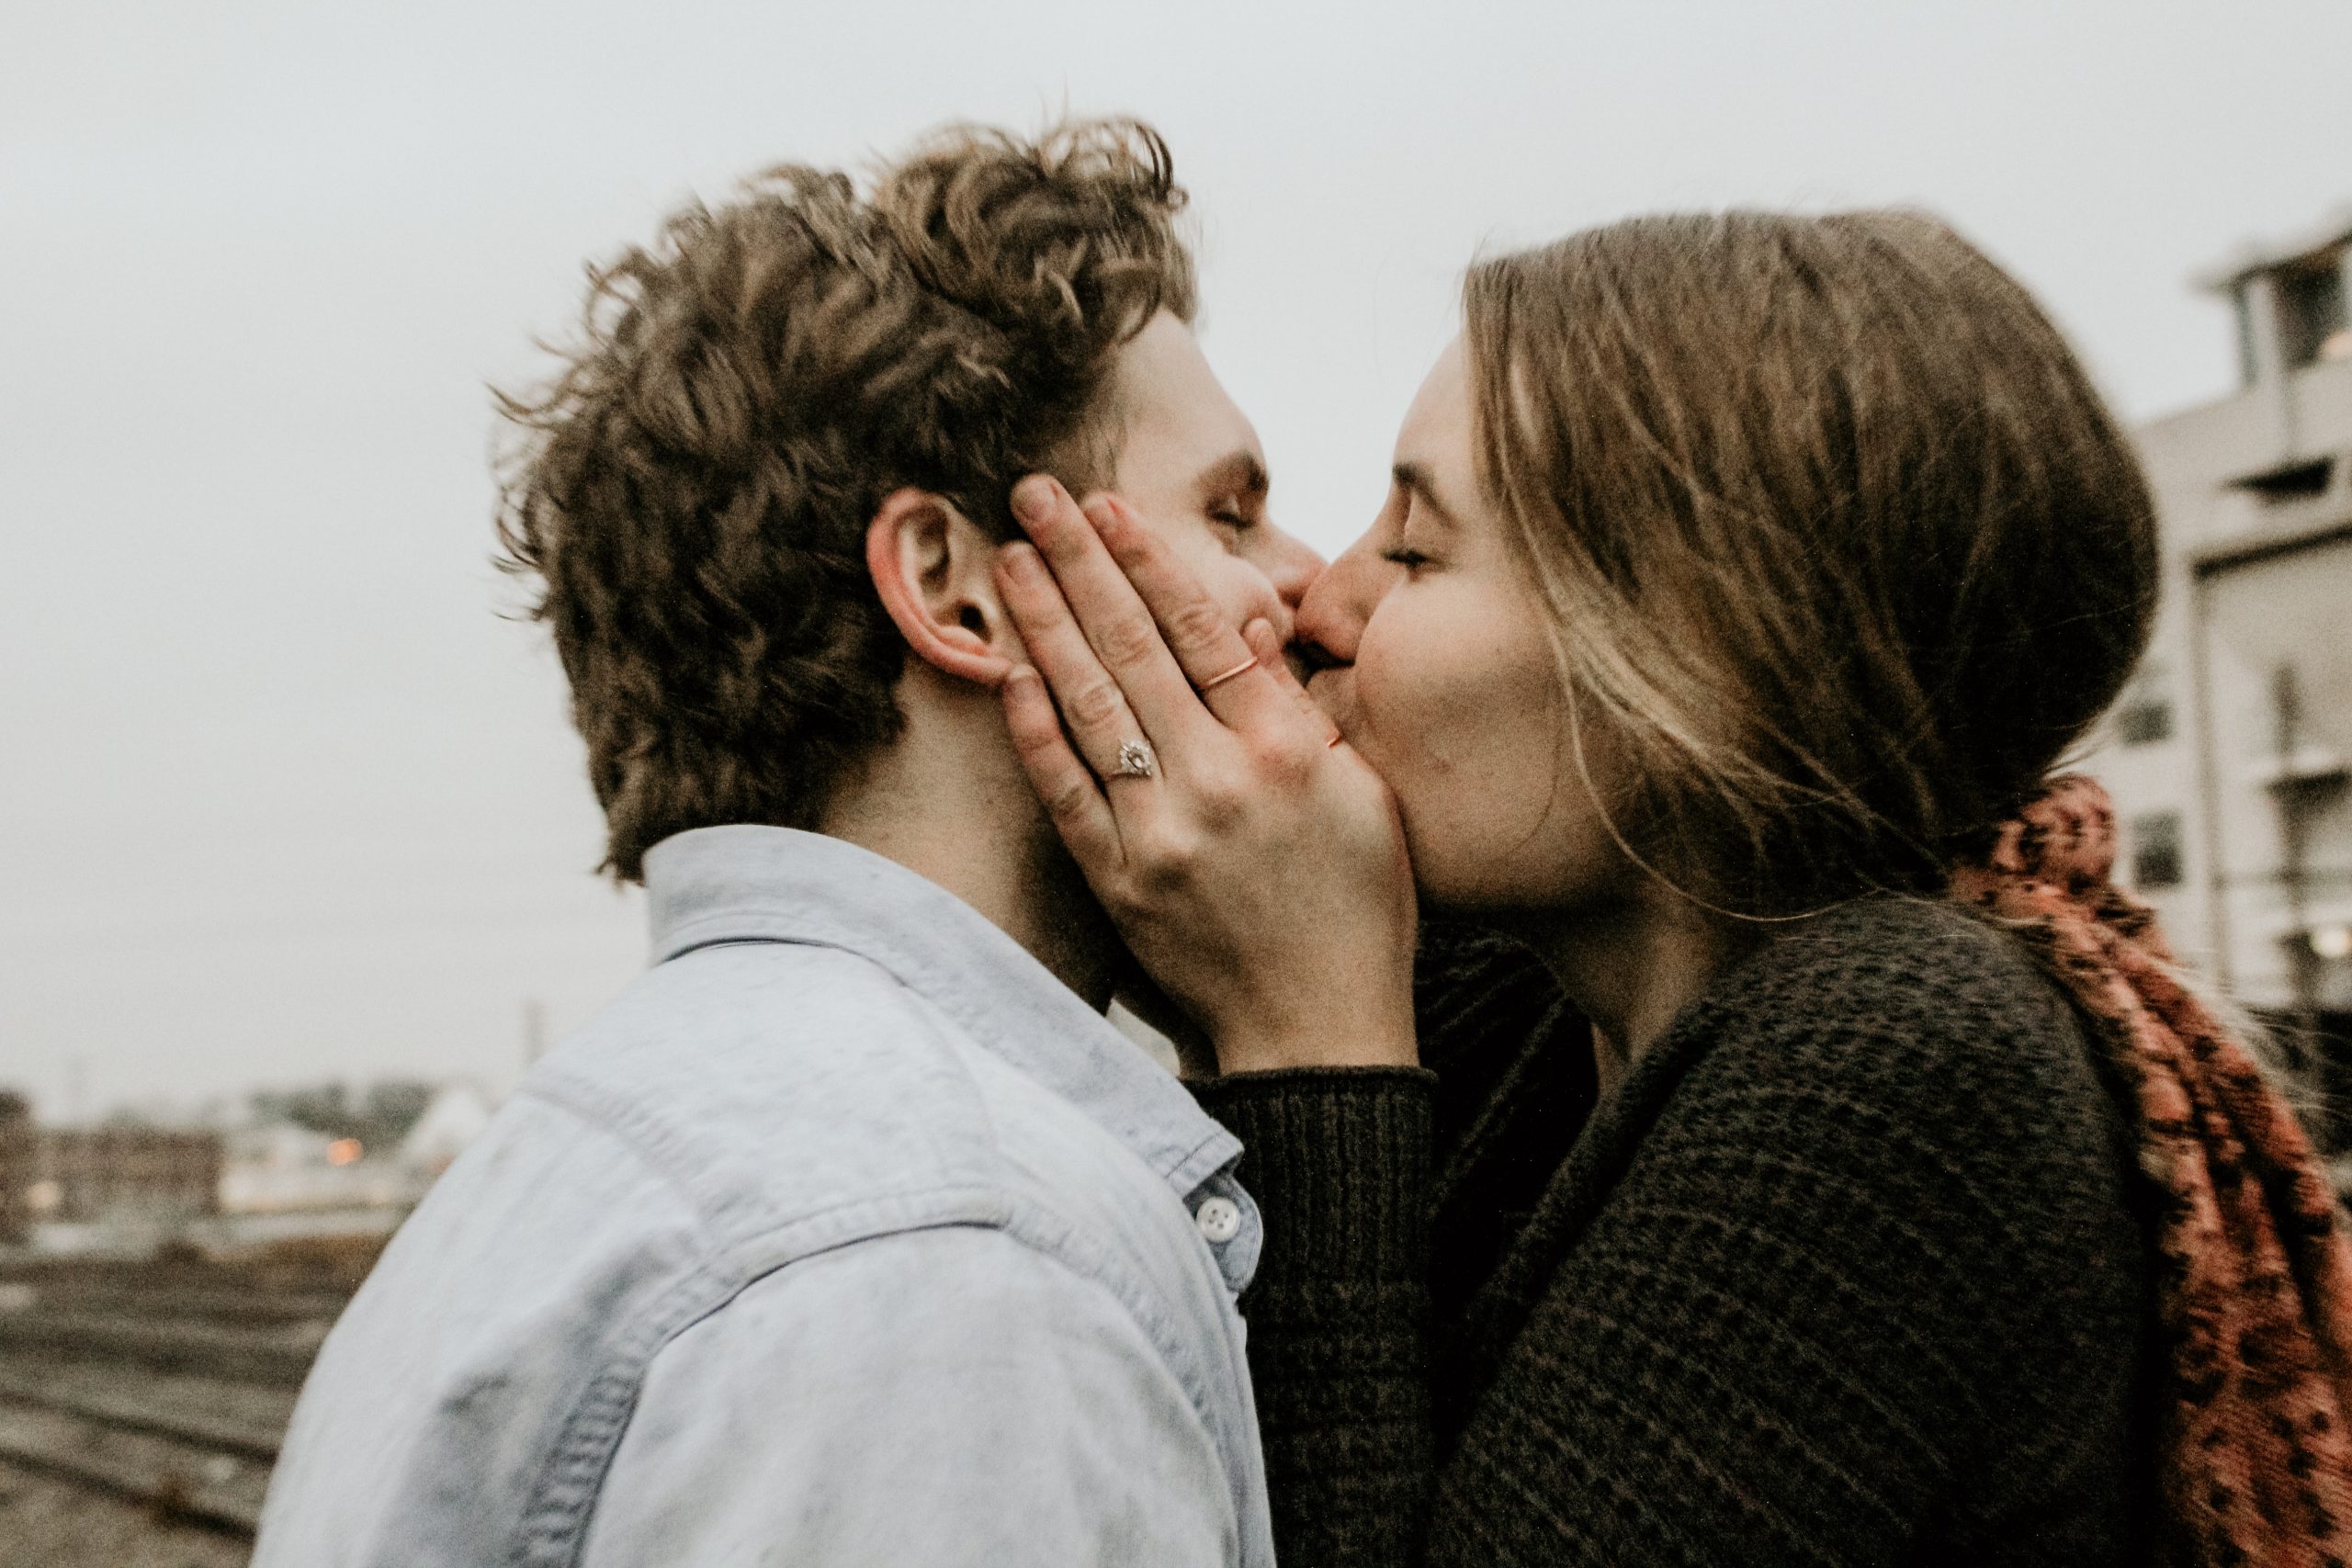 Sa shpesh puthesh me partnerin/en? Zbuloni ç’tregon kjo për lidhjen tuaj!